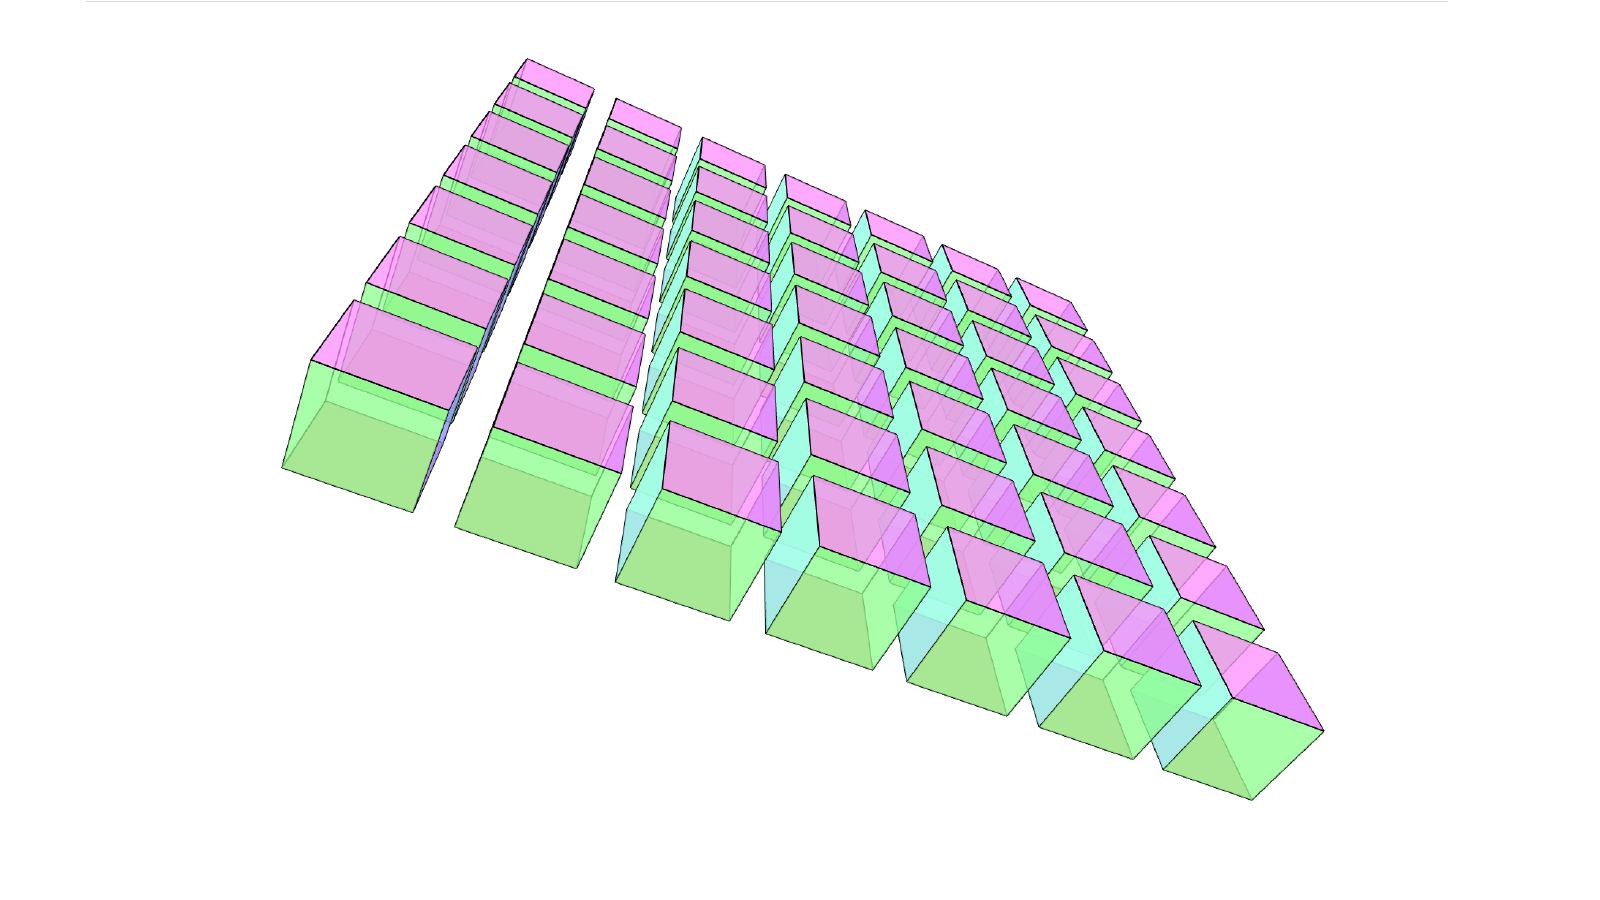 3d model of a cube